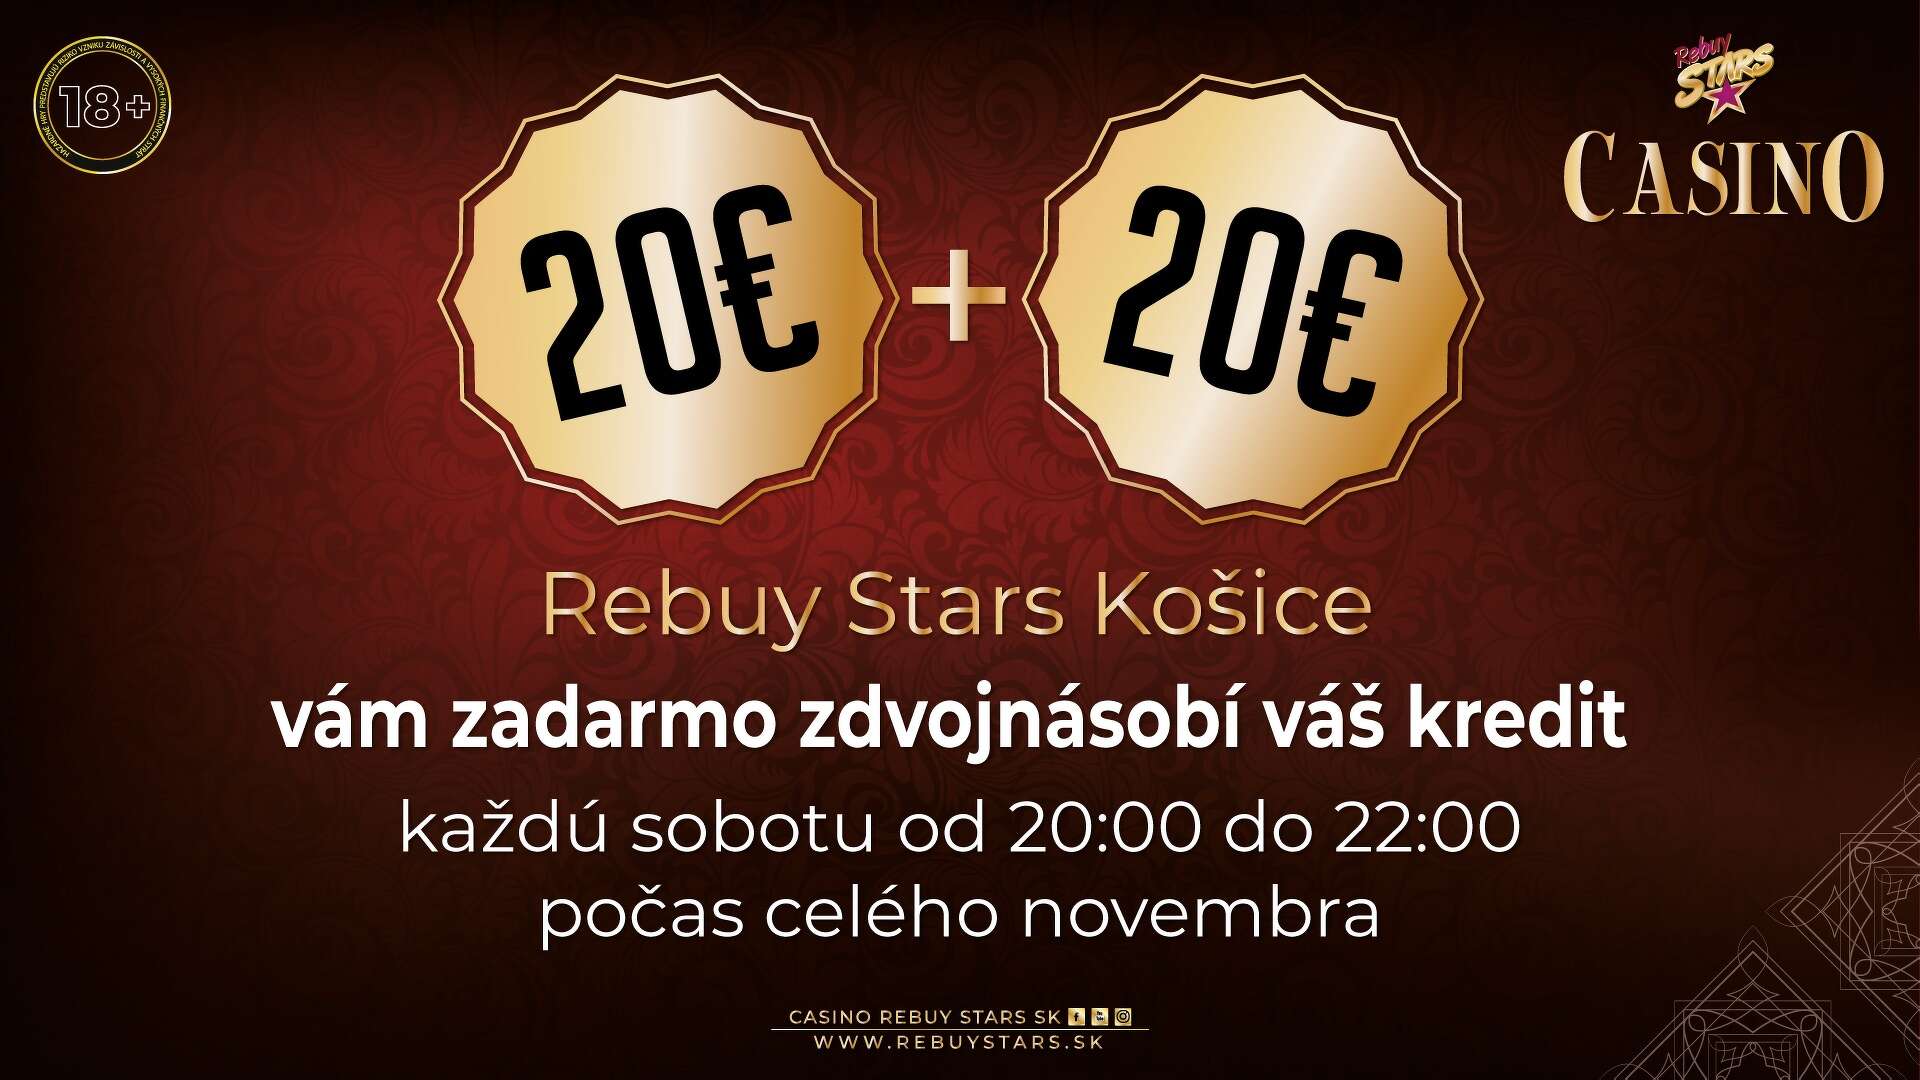 20 + 20 bonus - Casino Rebuy Stars Košice